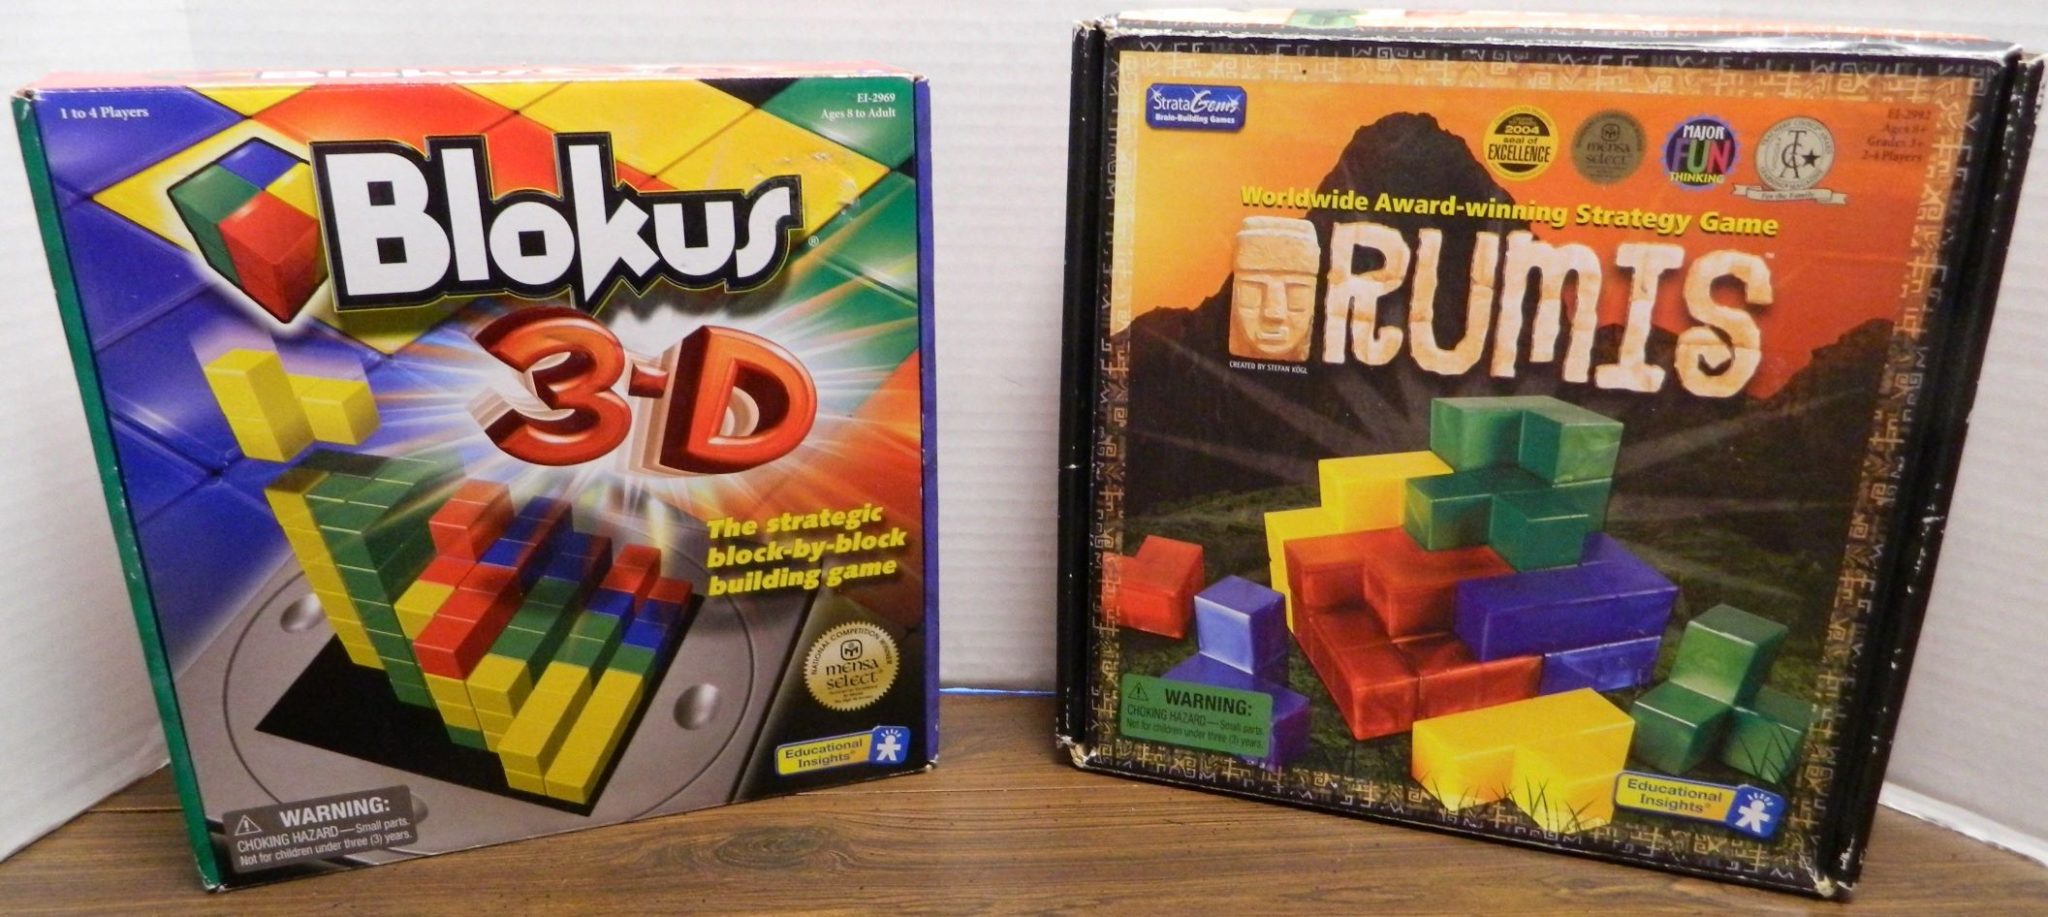 Blokus 3D and Rumis Box